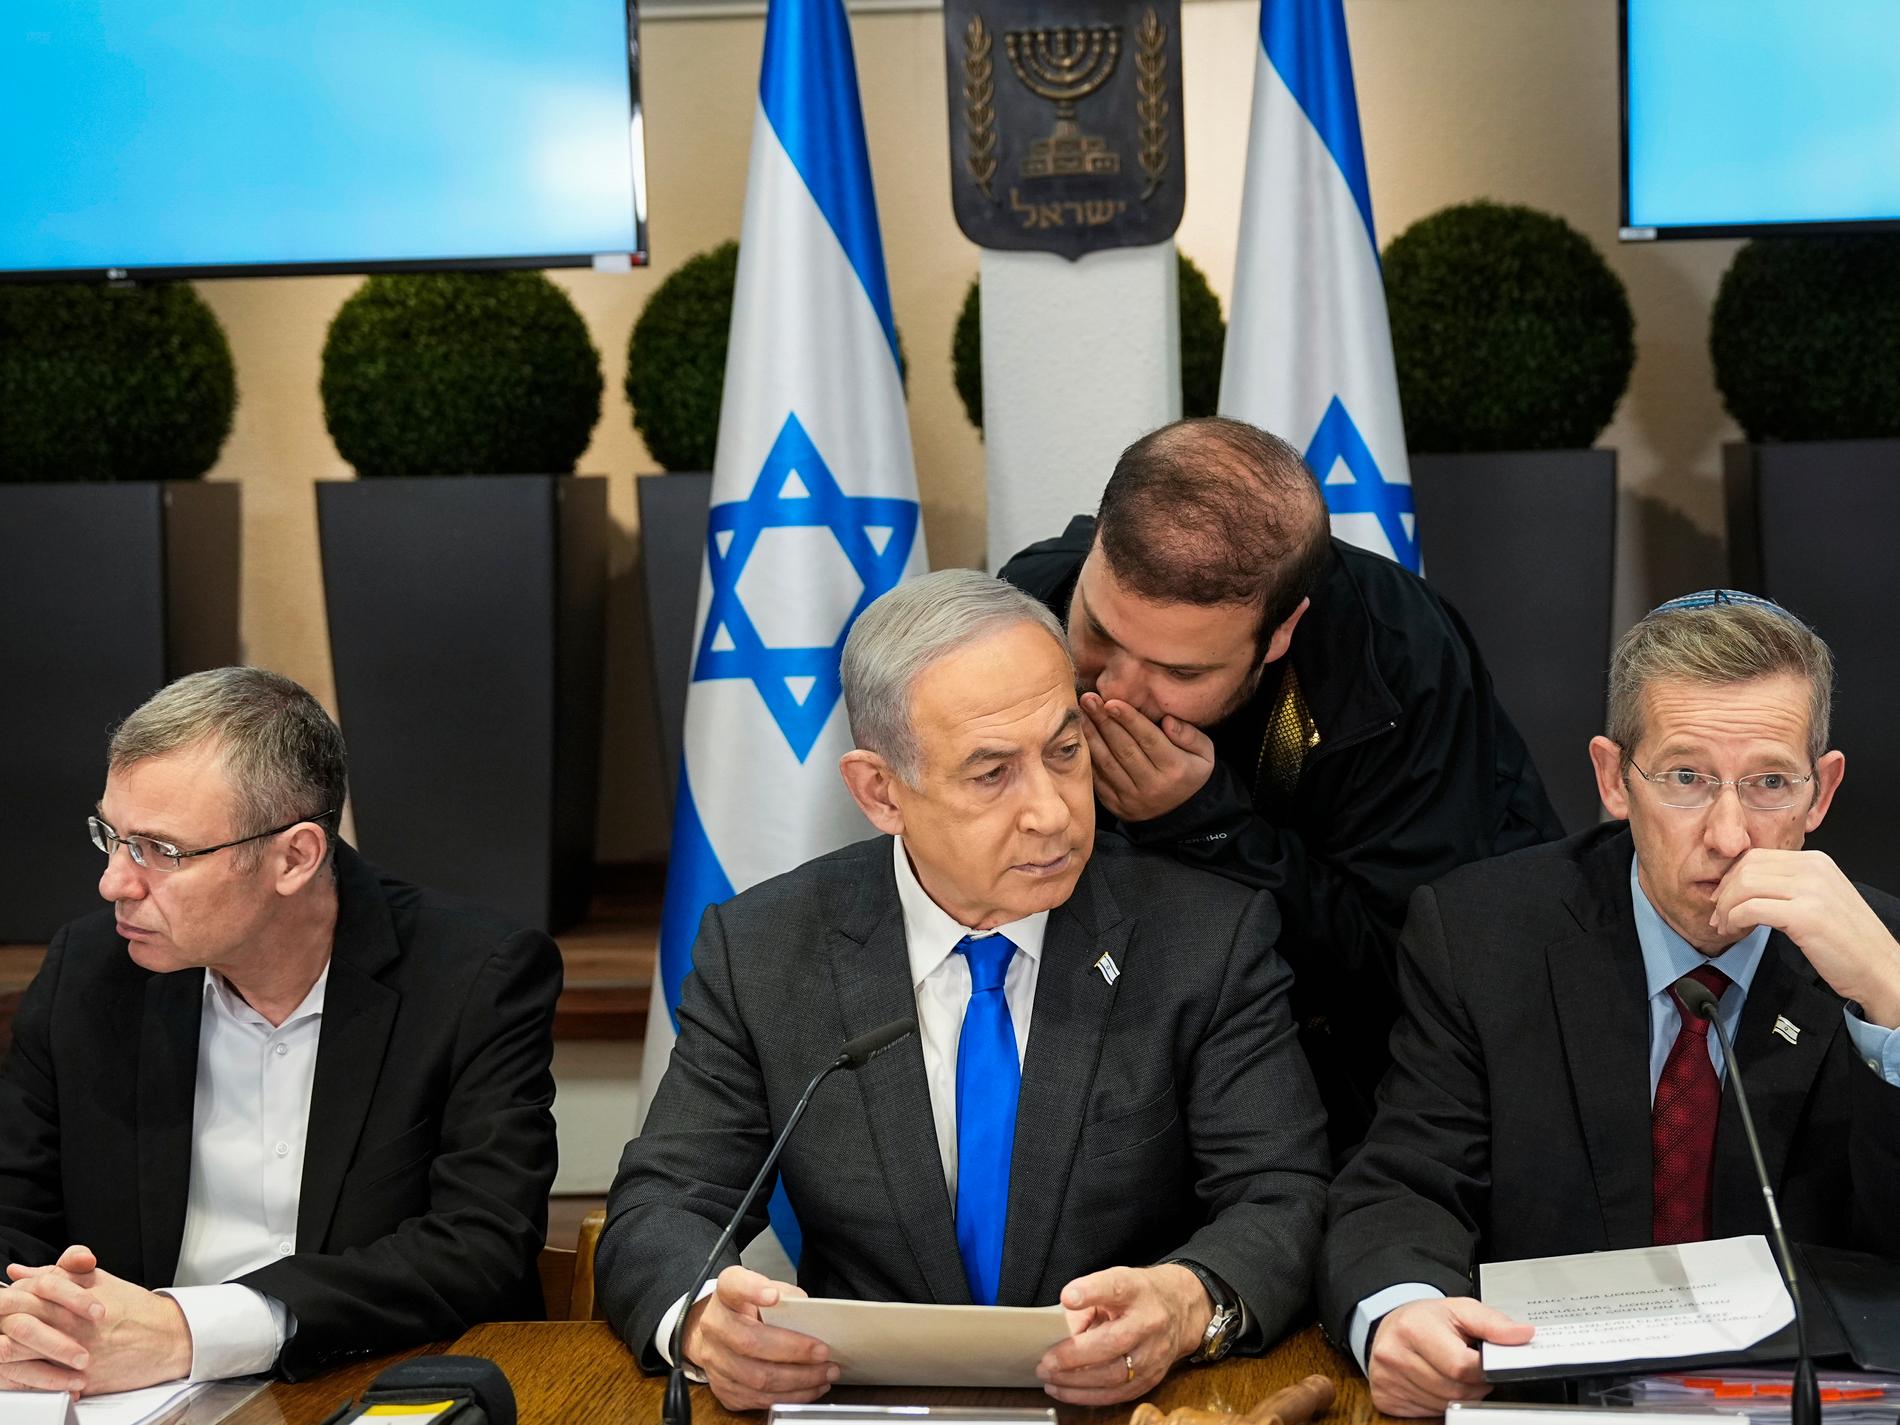 Netanyahu avvisar tvåstatslösning efter samtal